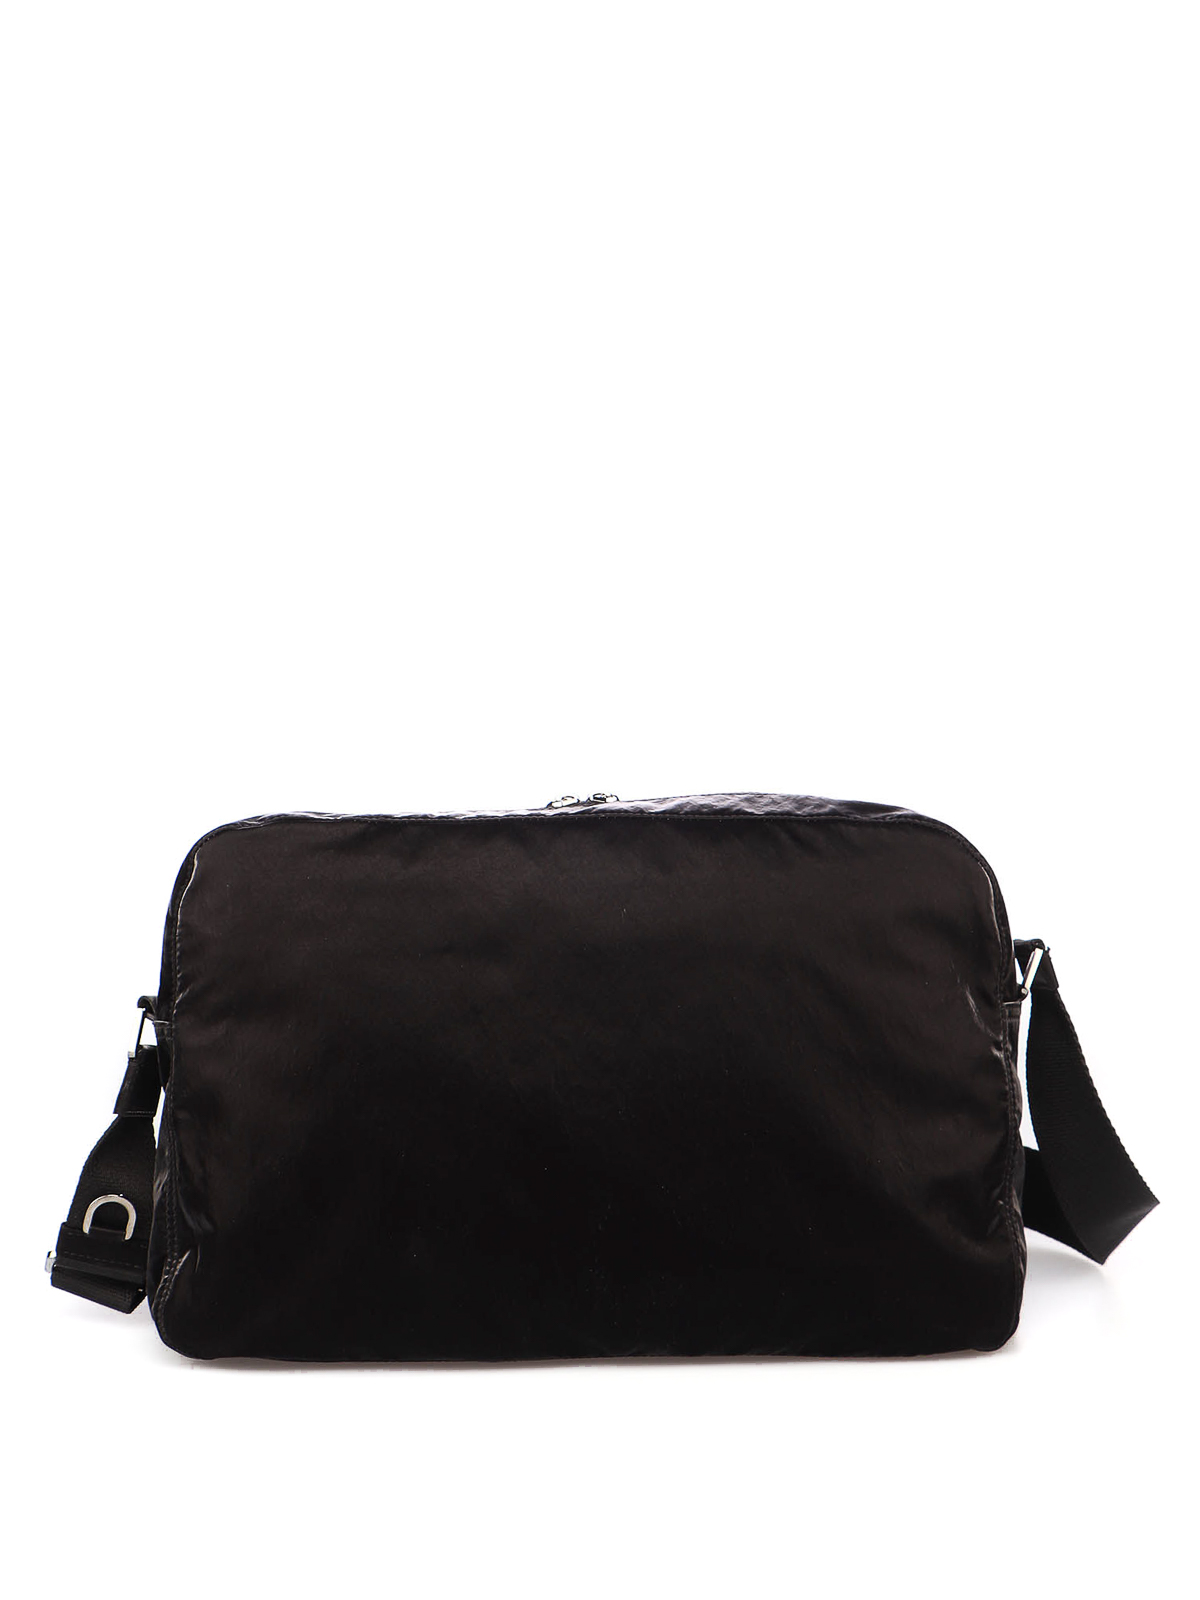 Buy Versace 19.69 Italia Men Black Messenger Bag NERO Online